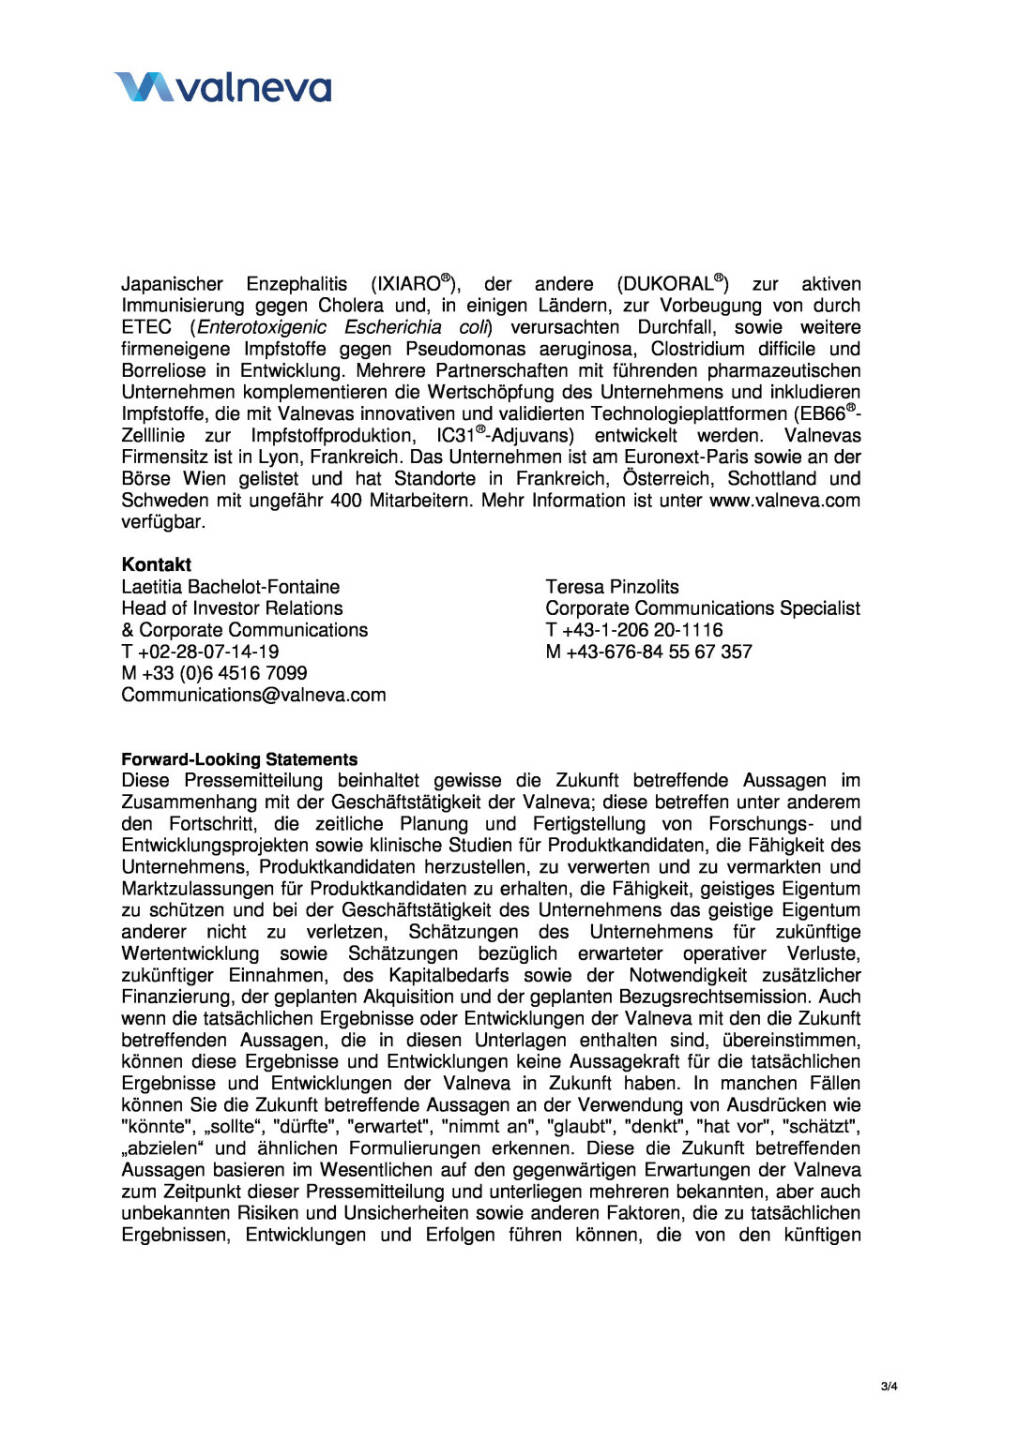 Valneva mit zwei neuen EB66-Vereinbarungen, Seite 3/4, komplettes Dokument unter http://boerse-social.com/static/uploads/file_317_valneva_mit_zwei_neuen_eb66-vereinbarungen.pdf